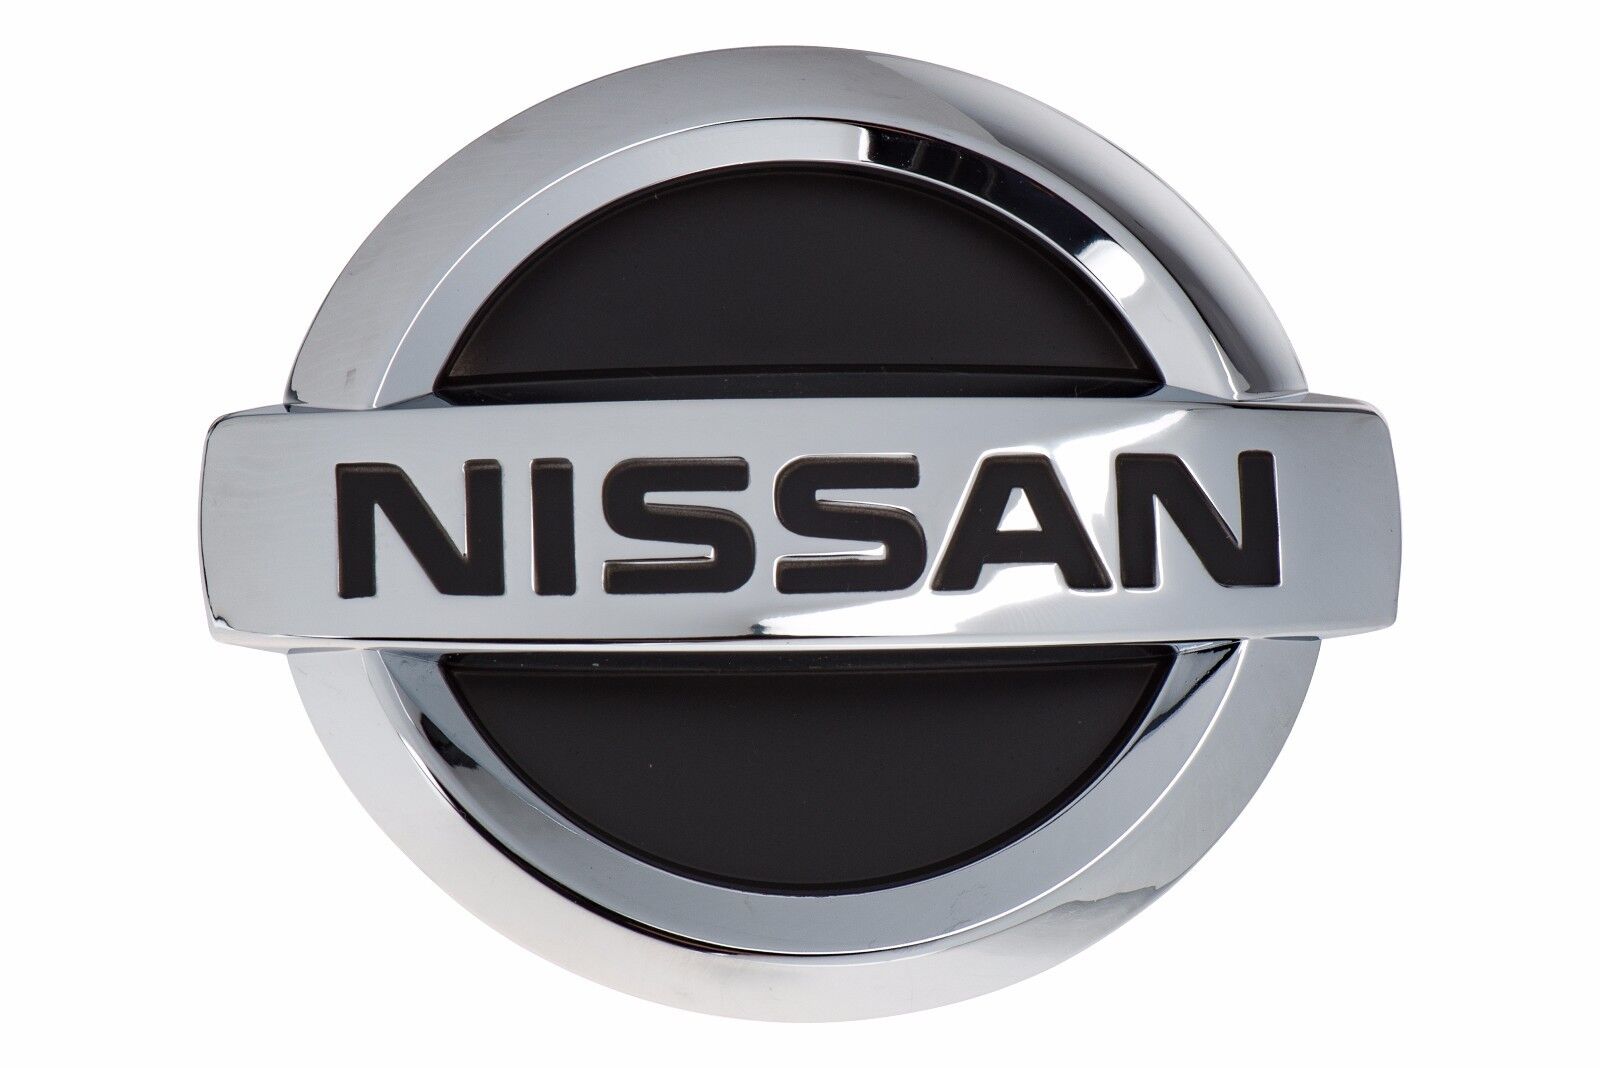 2004-2006 Nissan Altima Chrome Front Grille Emblem Logo Nameplate Badge OEM NEW